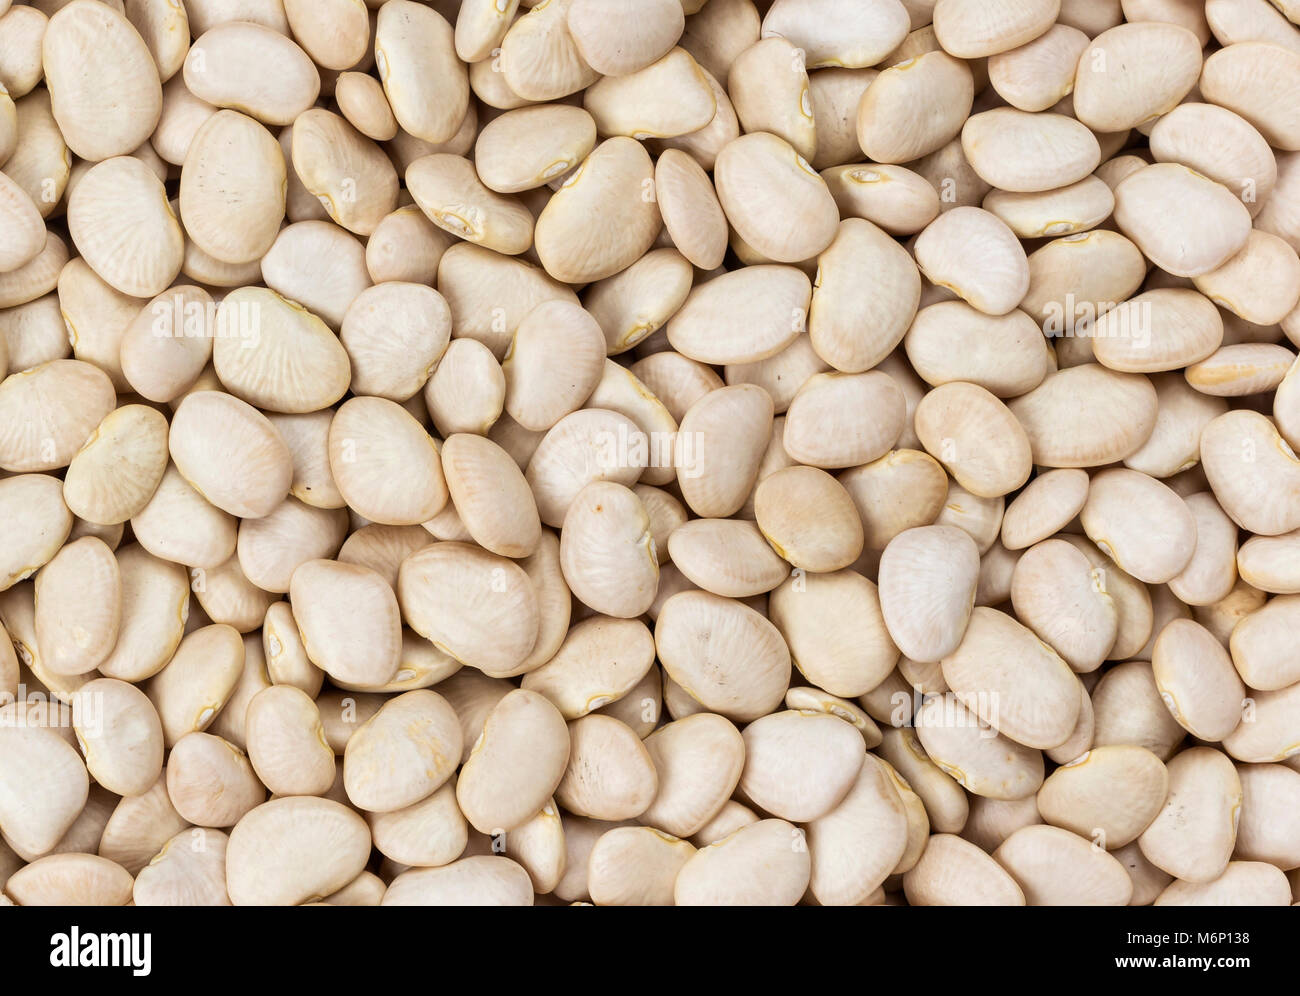 White kidney beans texture Stock Photo